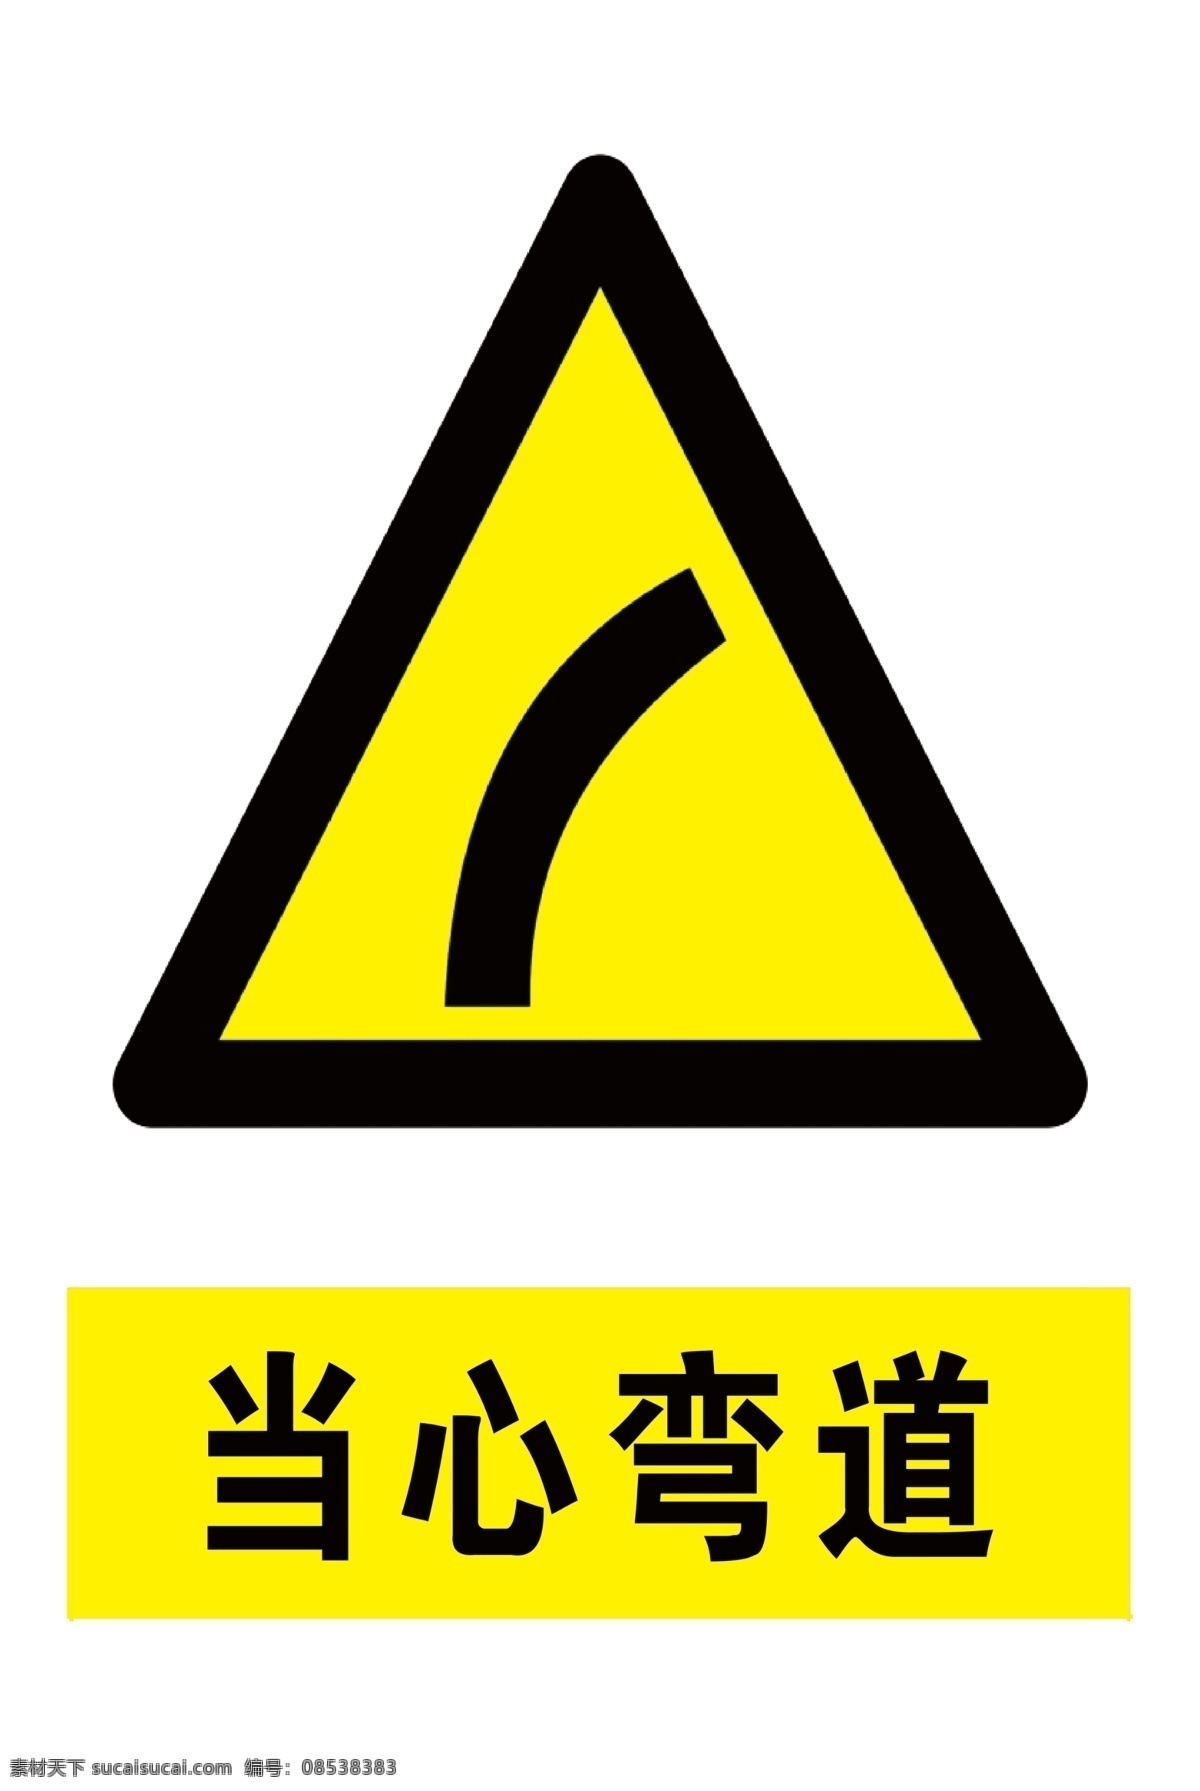 当心弯道图片 安全标识 警示标识 当心弯道 安全 警示 禁止 黄色标识 标志图标 公共标识标志